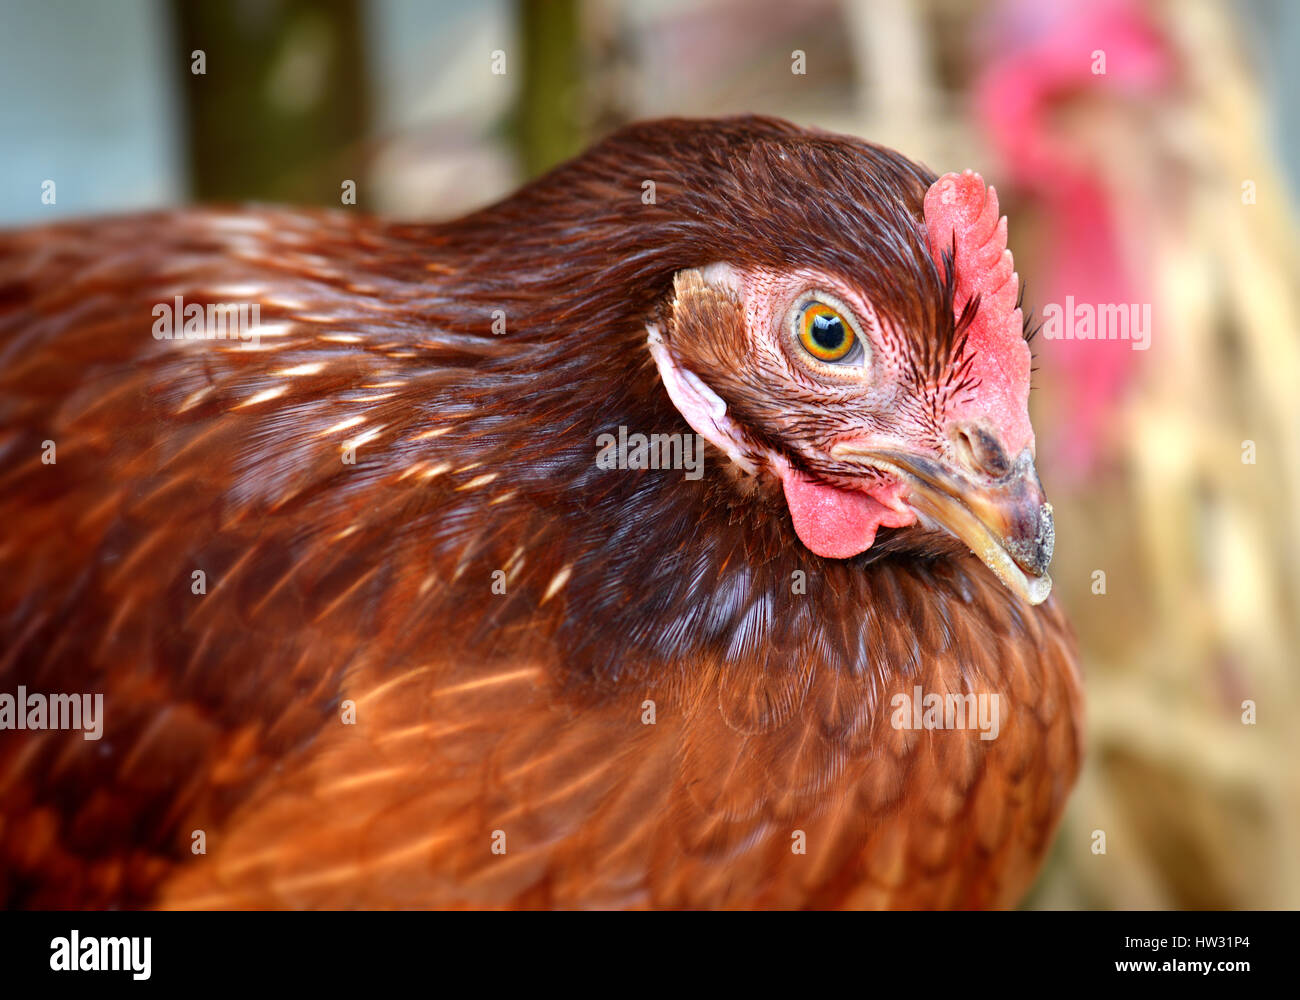 Hen junge Hybrid Huhn in Vieh Bauernhof Foto in niedrigen Innenbeleuchtung und harte Contras Prozess. Stockfoto